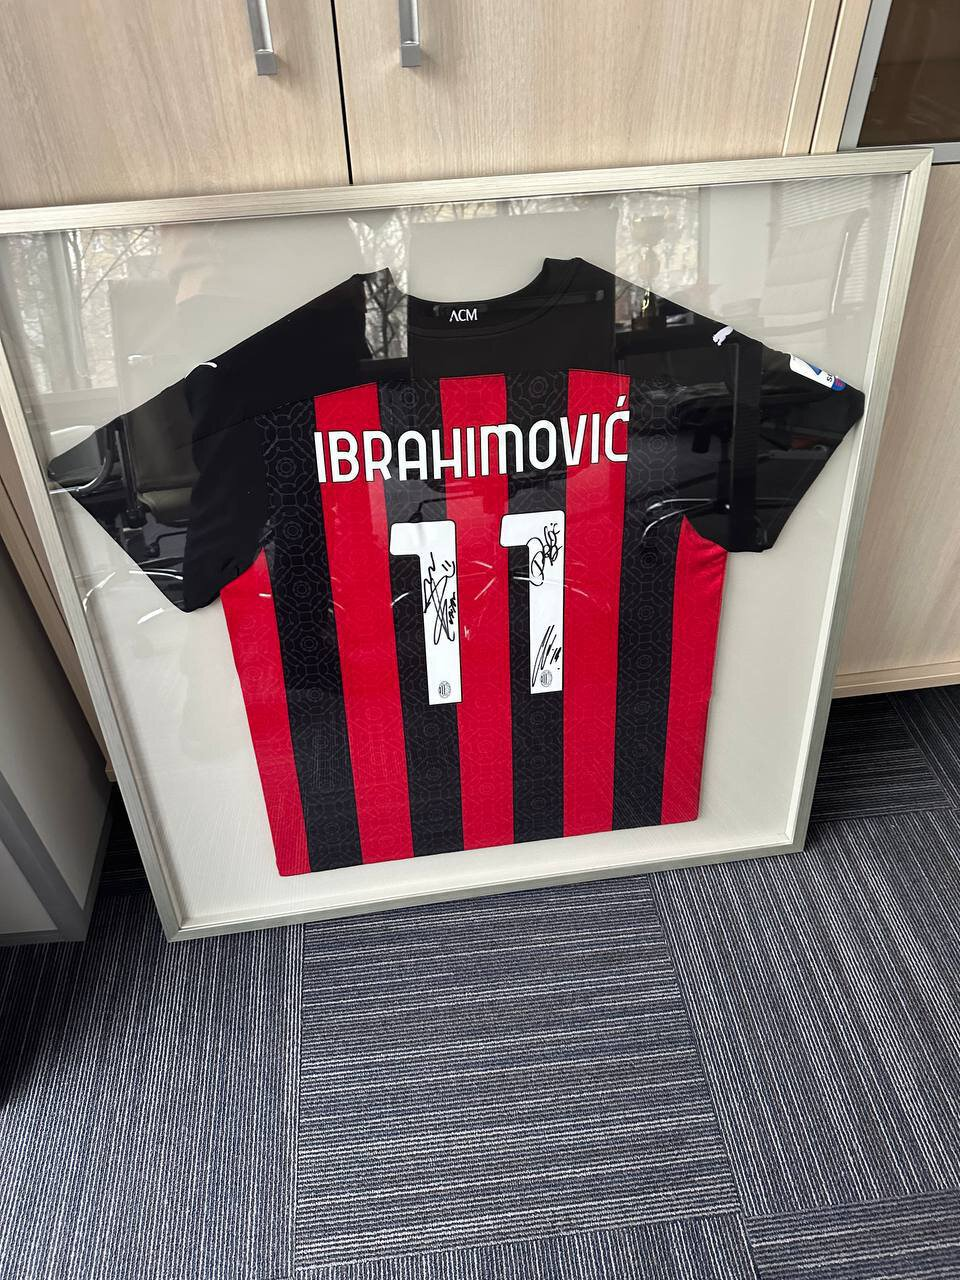 Ibrahimovic-T-shirt